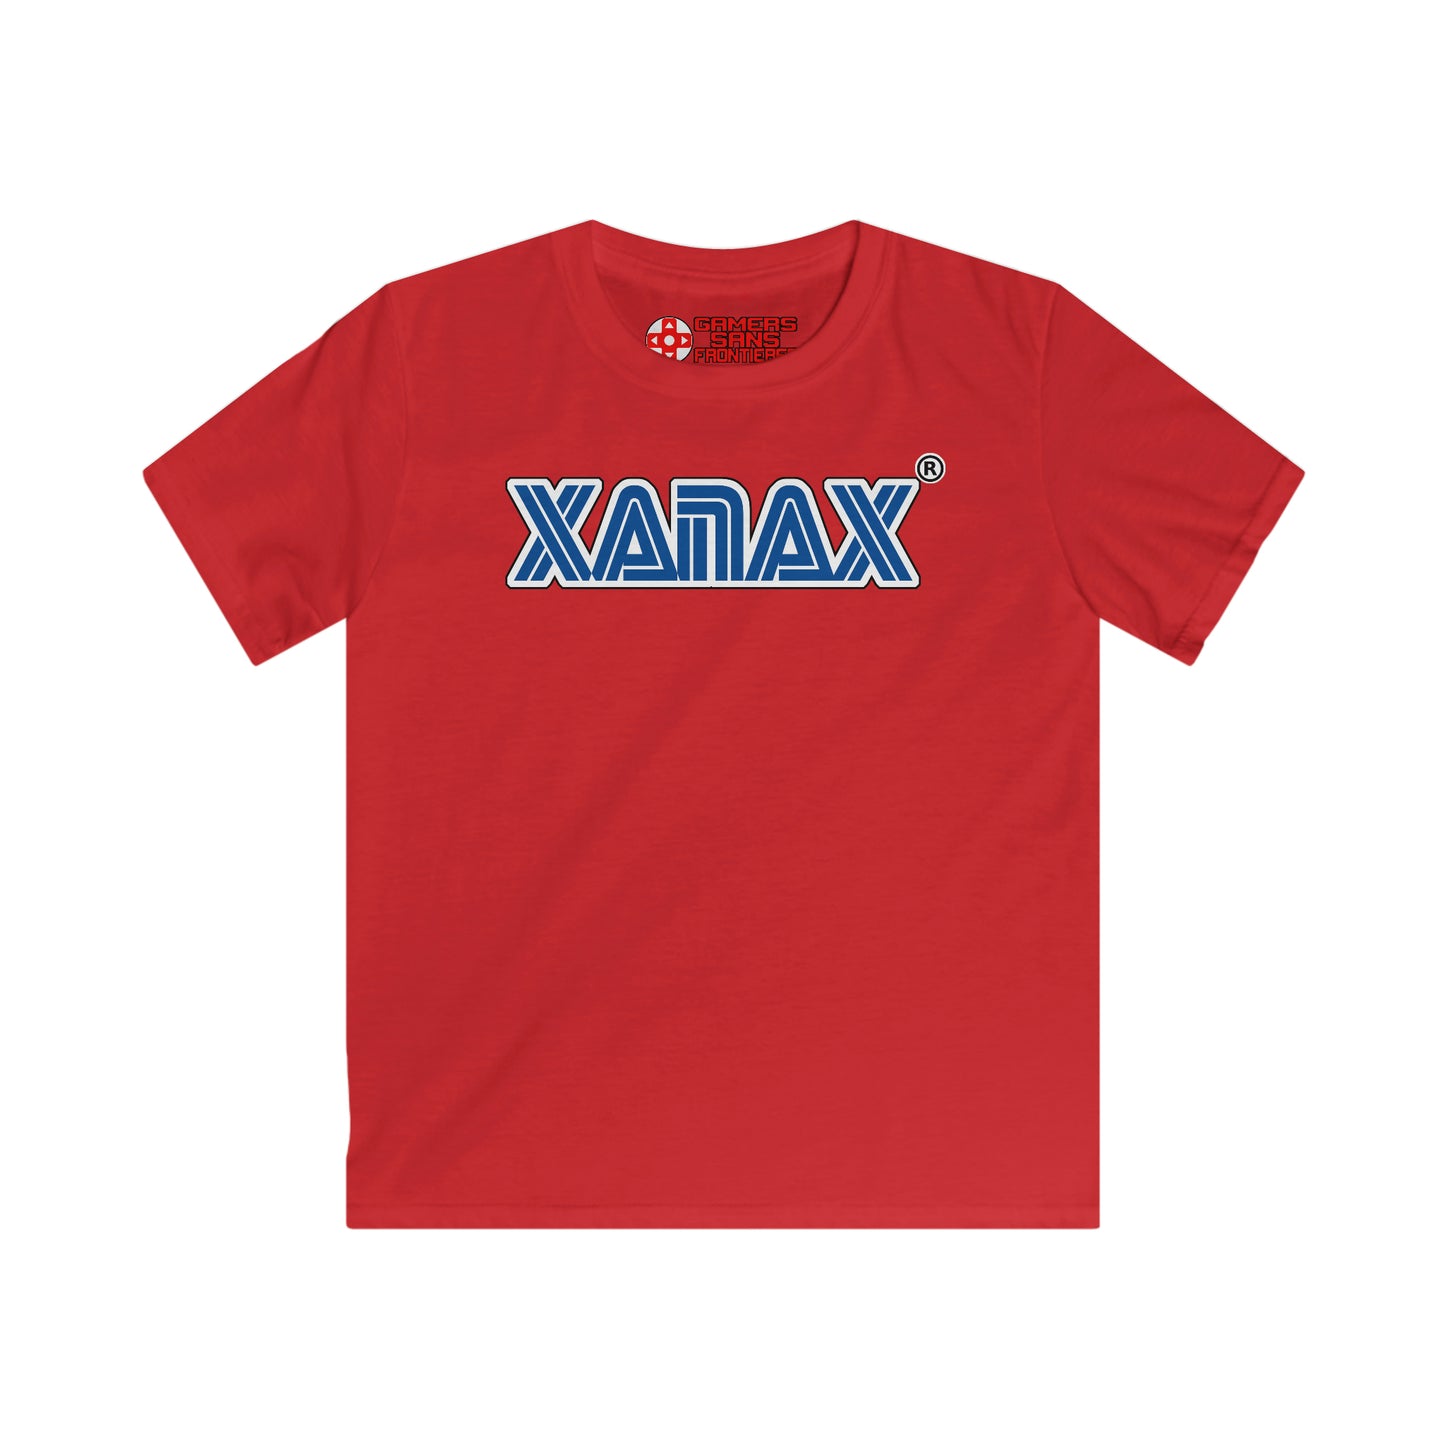 Kids' Tee - XANAX